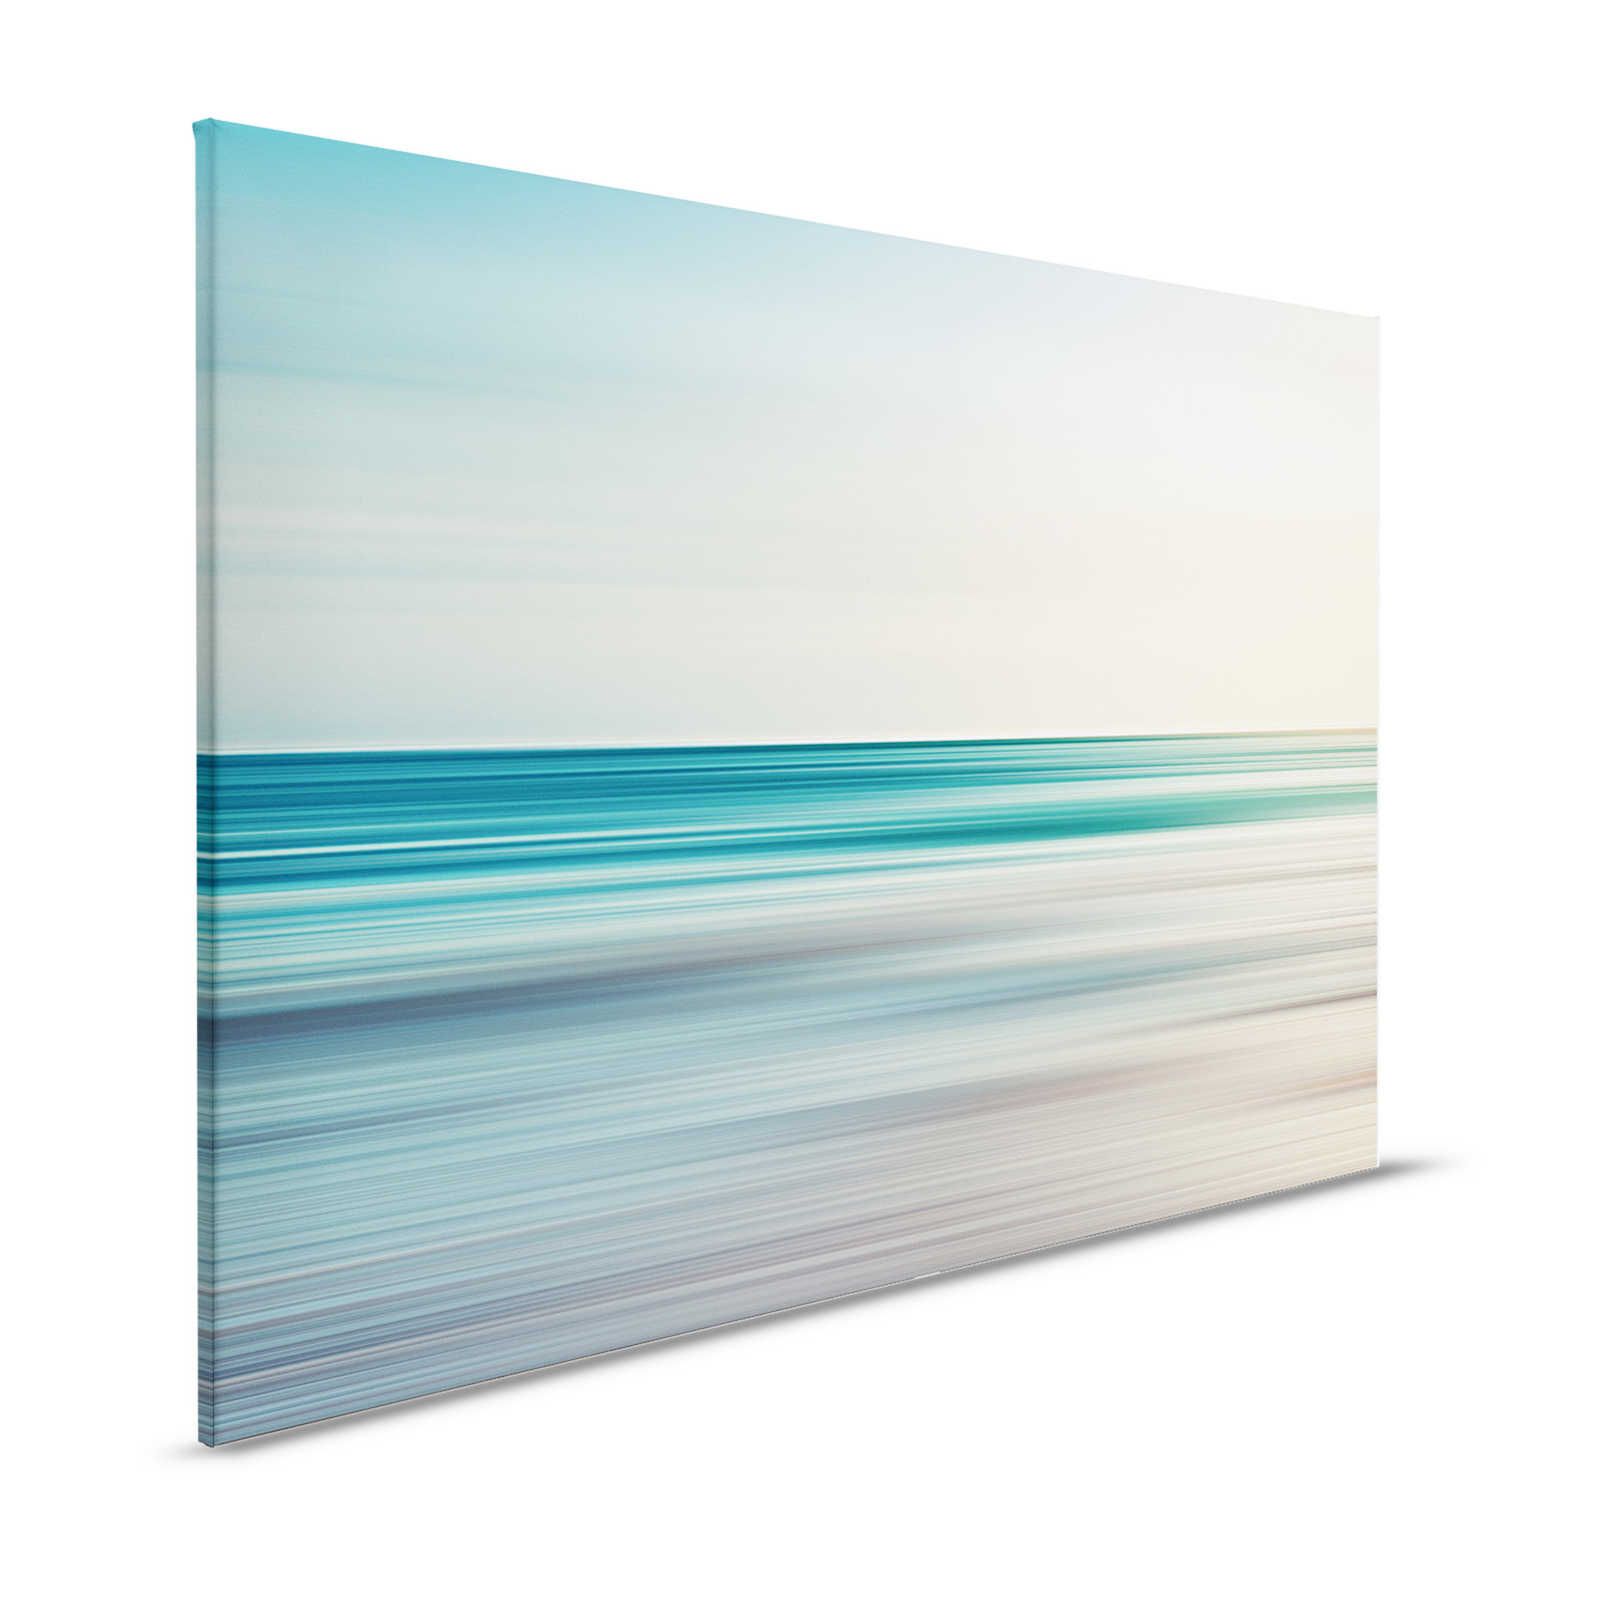 Horizon 1 - Leinwandbild abstrakte Landschaft in Blau – 1,20 m x 0,80 m
